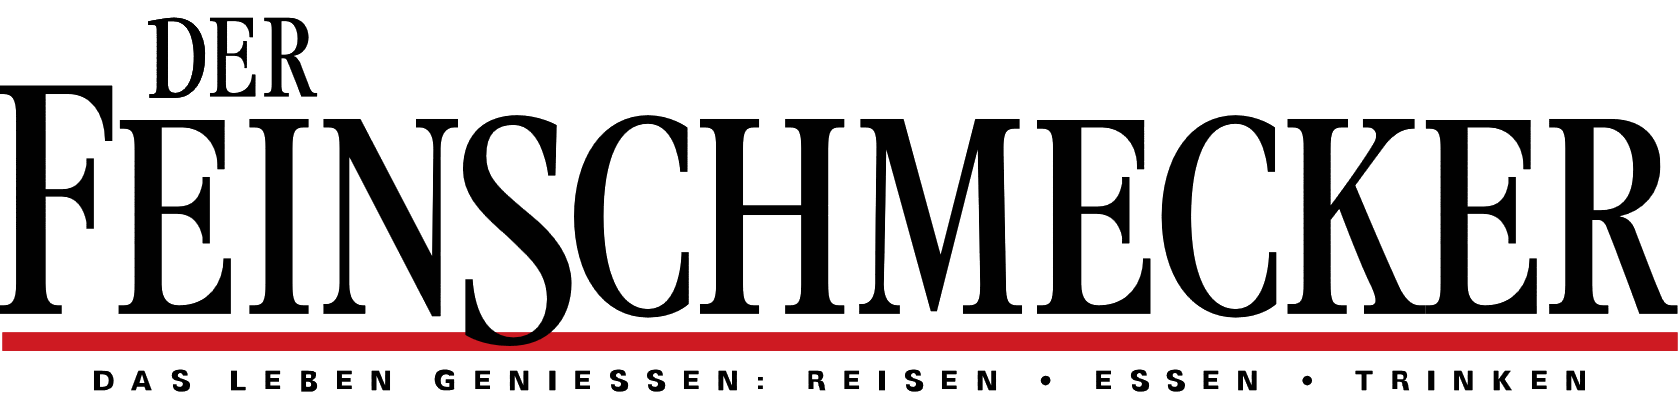 Logo DerFeinschmecker